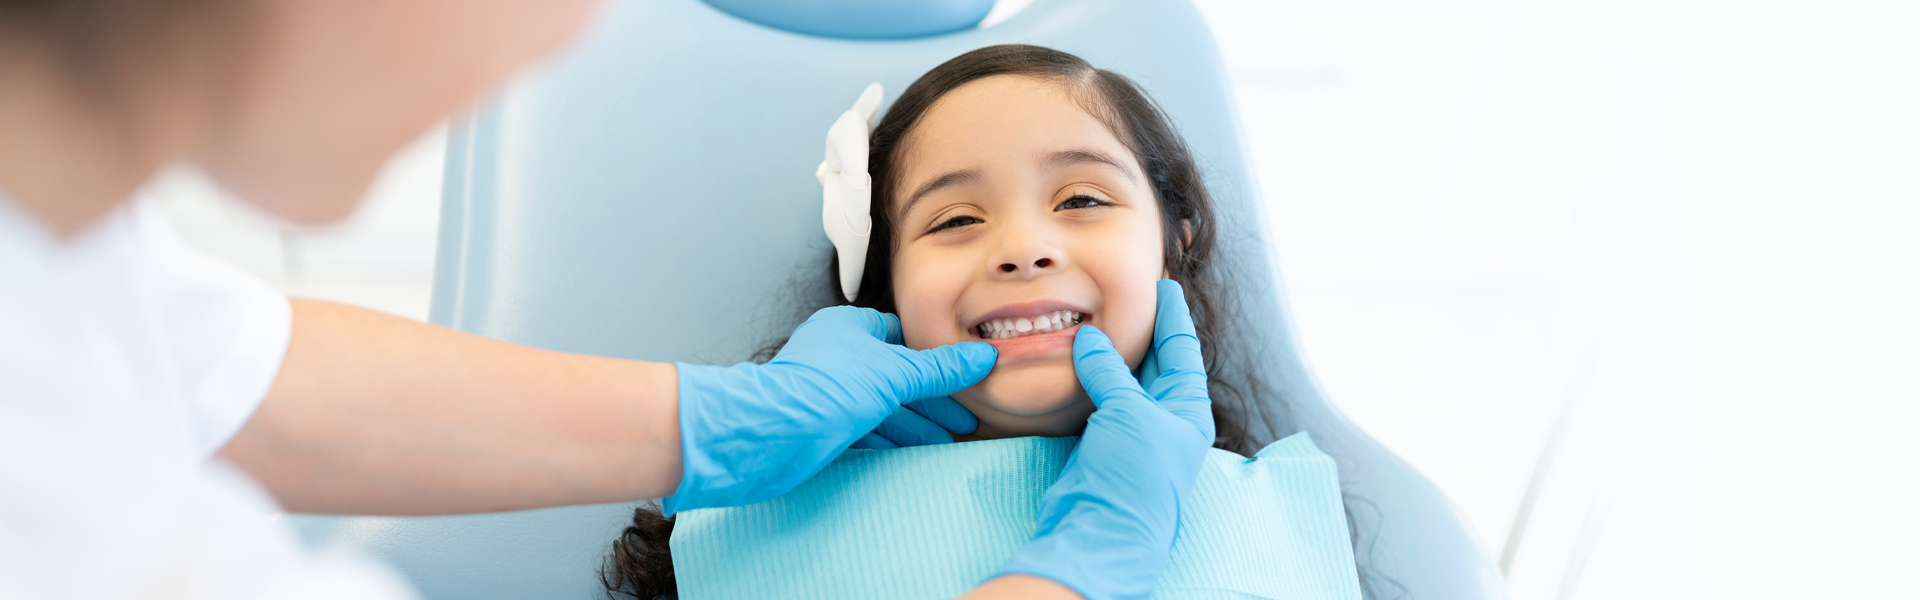 Why Do We Need Dental Sealants?